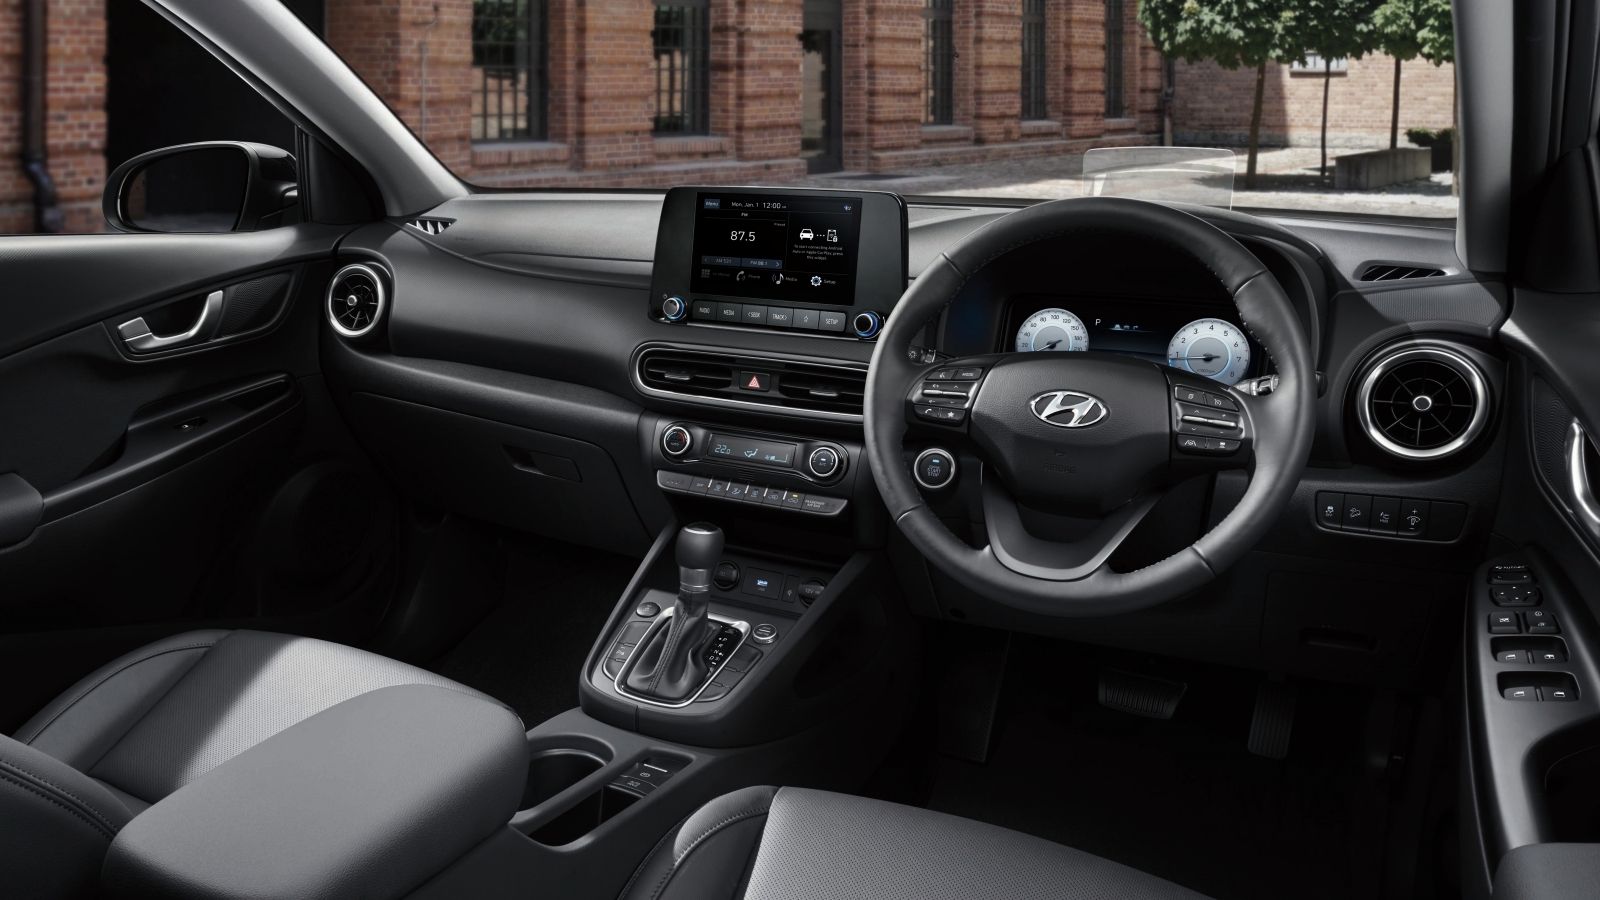 2021 Hyundai Kona 1.6 Turbo Interior 001